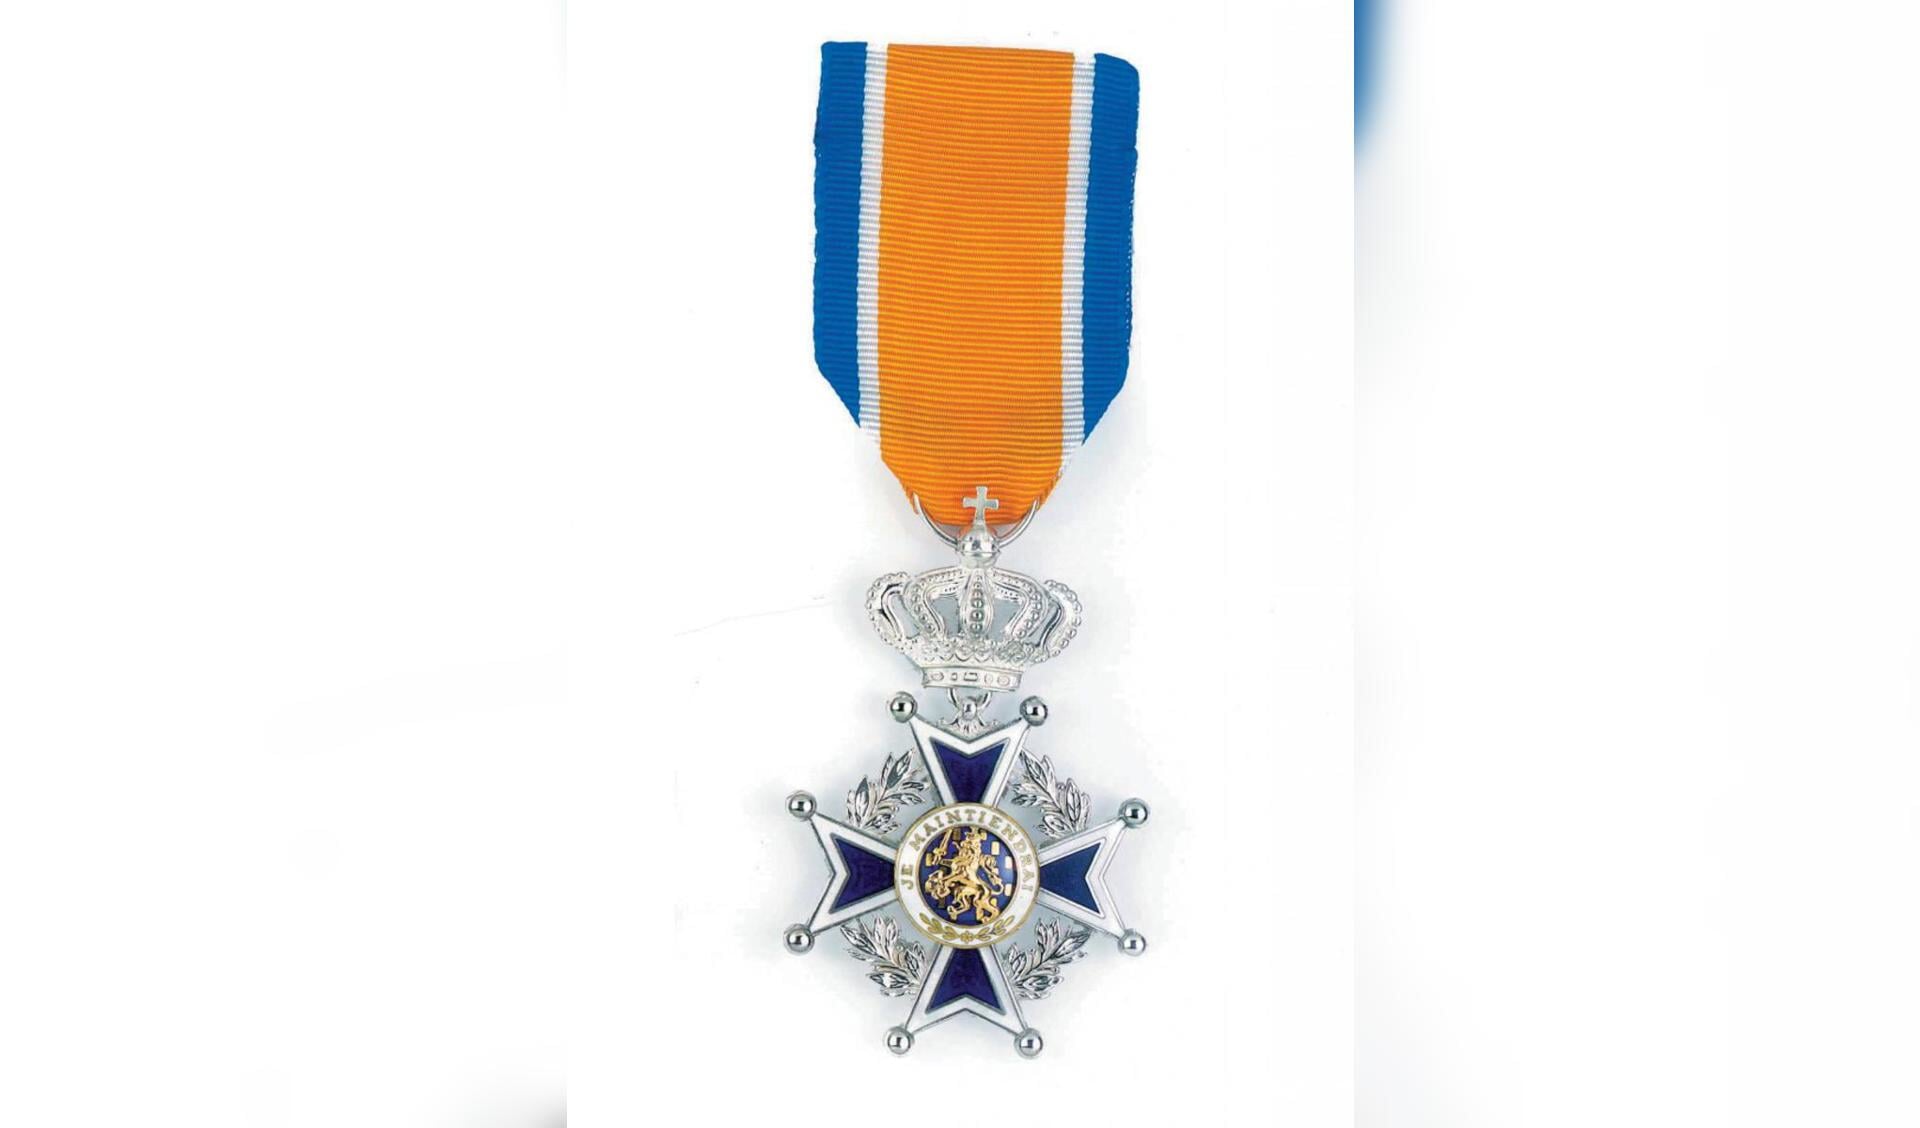 De versierselen die horen bij de Koninklijke Onderscheiding Ridder in de Orde van Oranje Nassau.